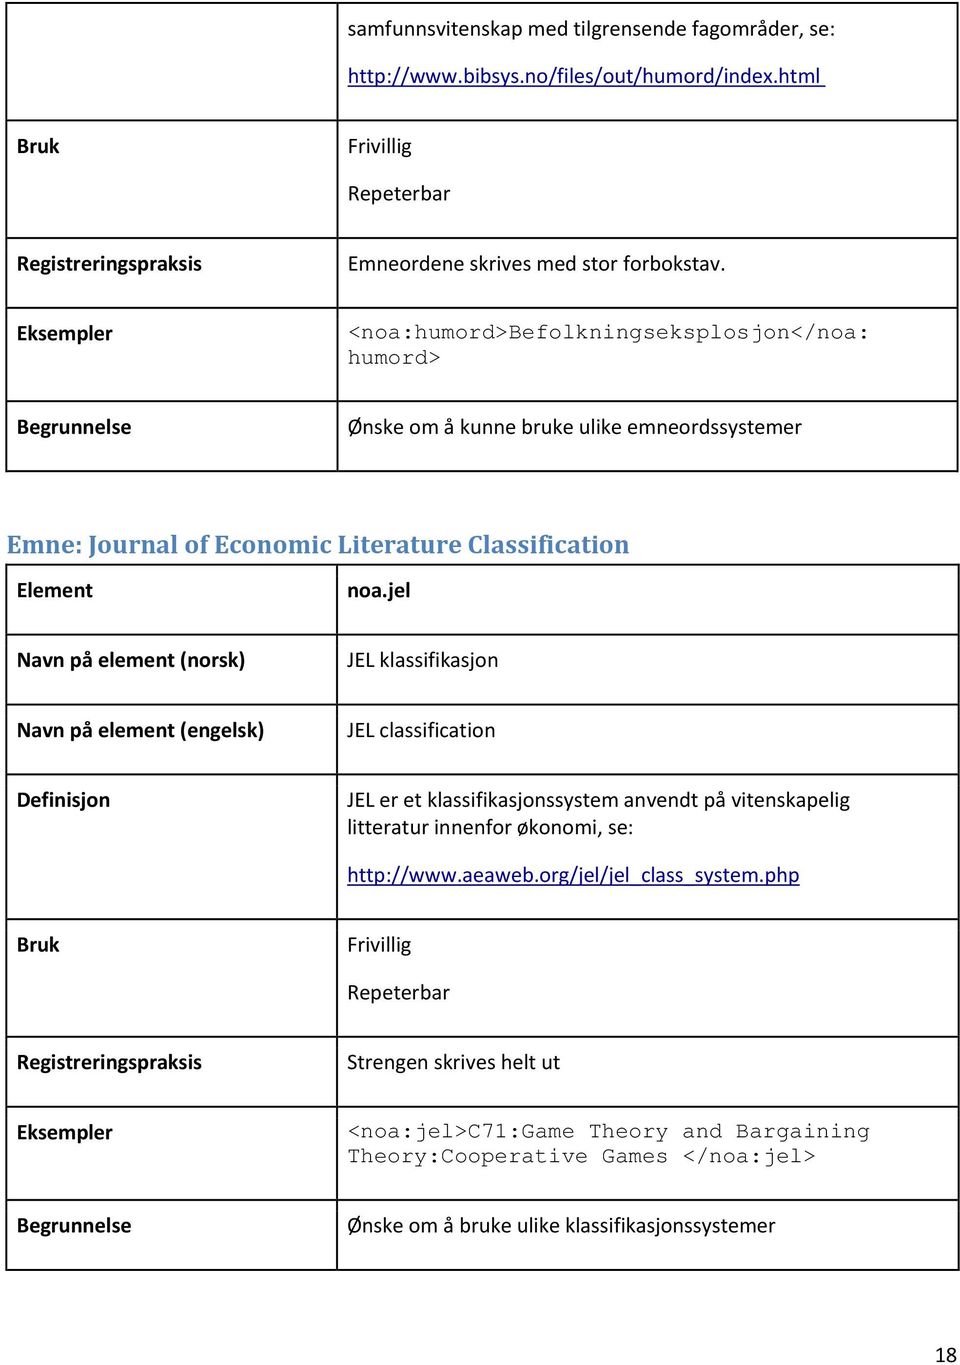 jel JEL klassifikasjon JEL classification JEL er et klassifikasjonssystem anvendt på vitenskapelig litteratur innenfor økonomi, se: http://www.aeaweb.